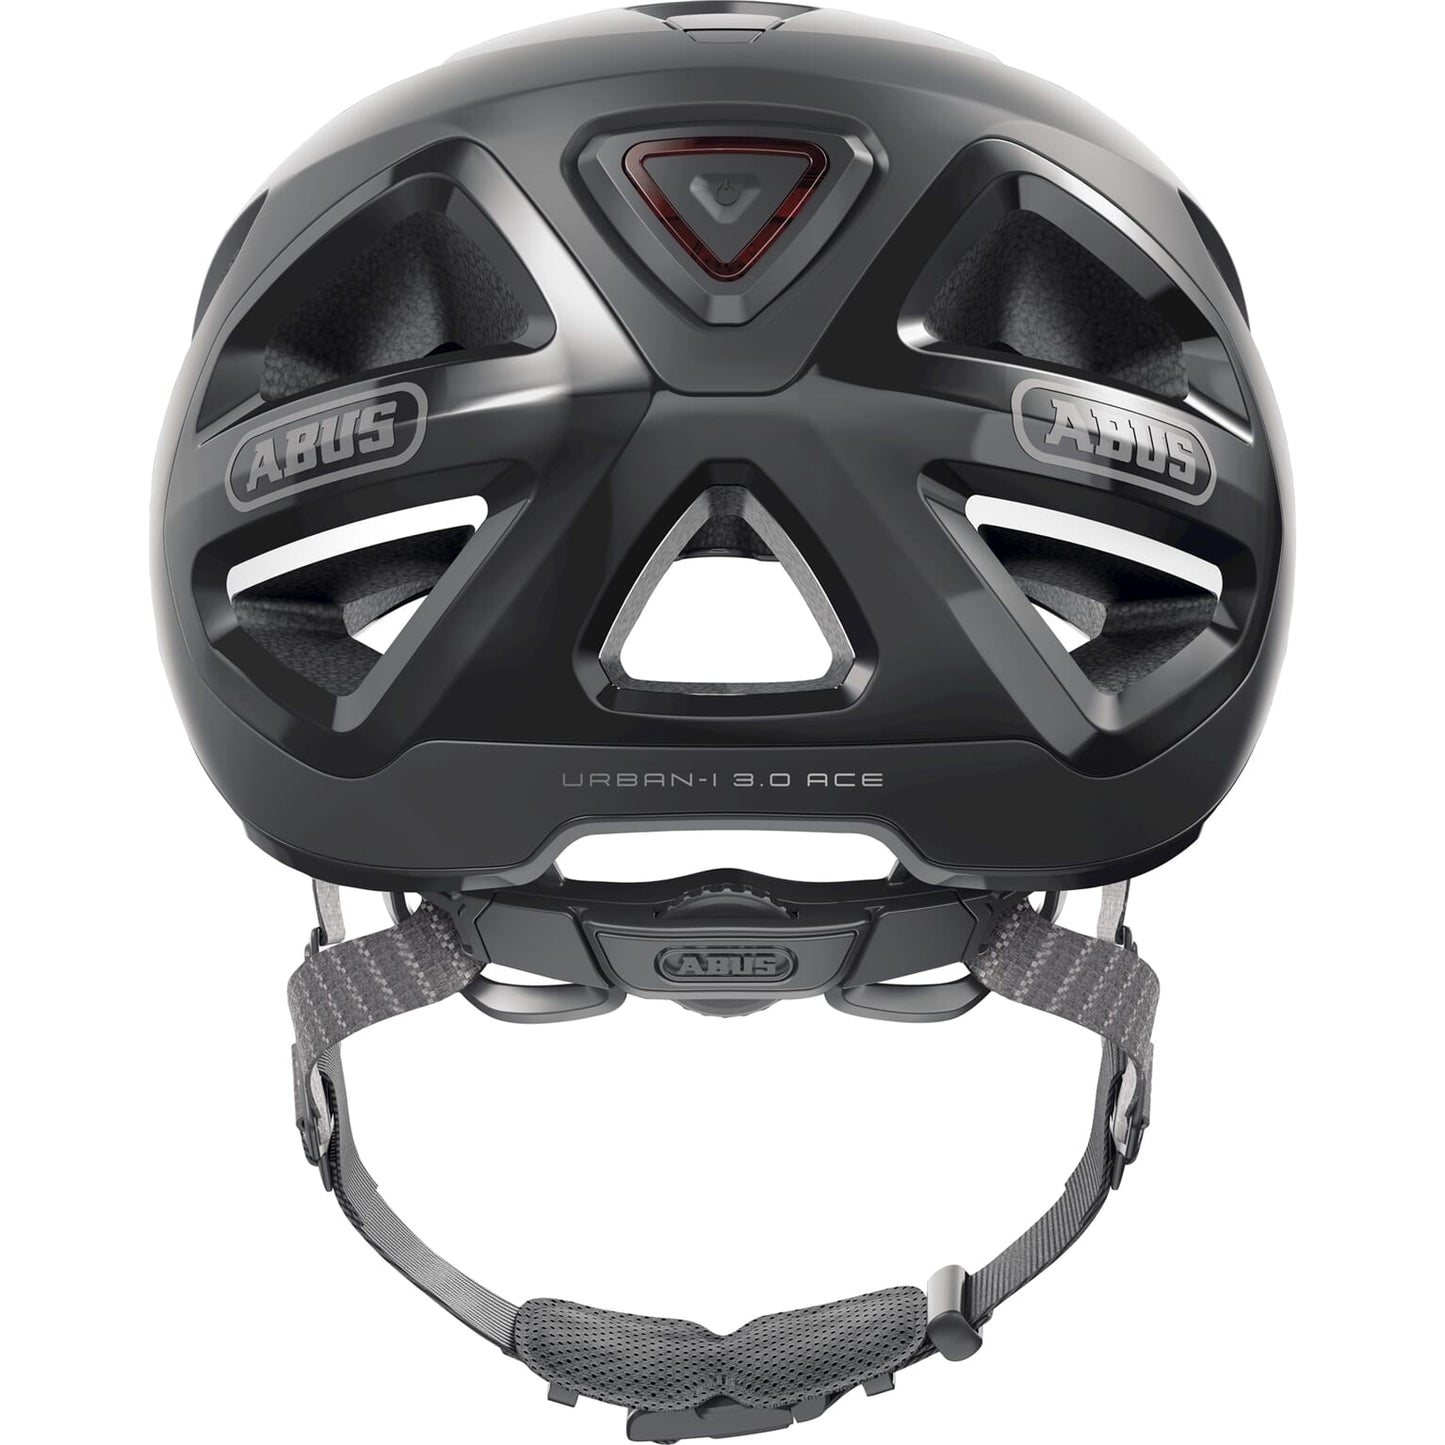 Abus Helmet Urban-I 3.0 Ace Velvet Black L 56-61cm